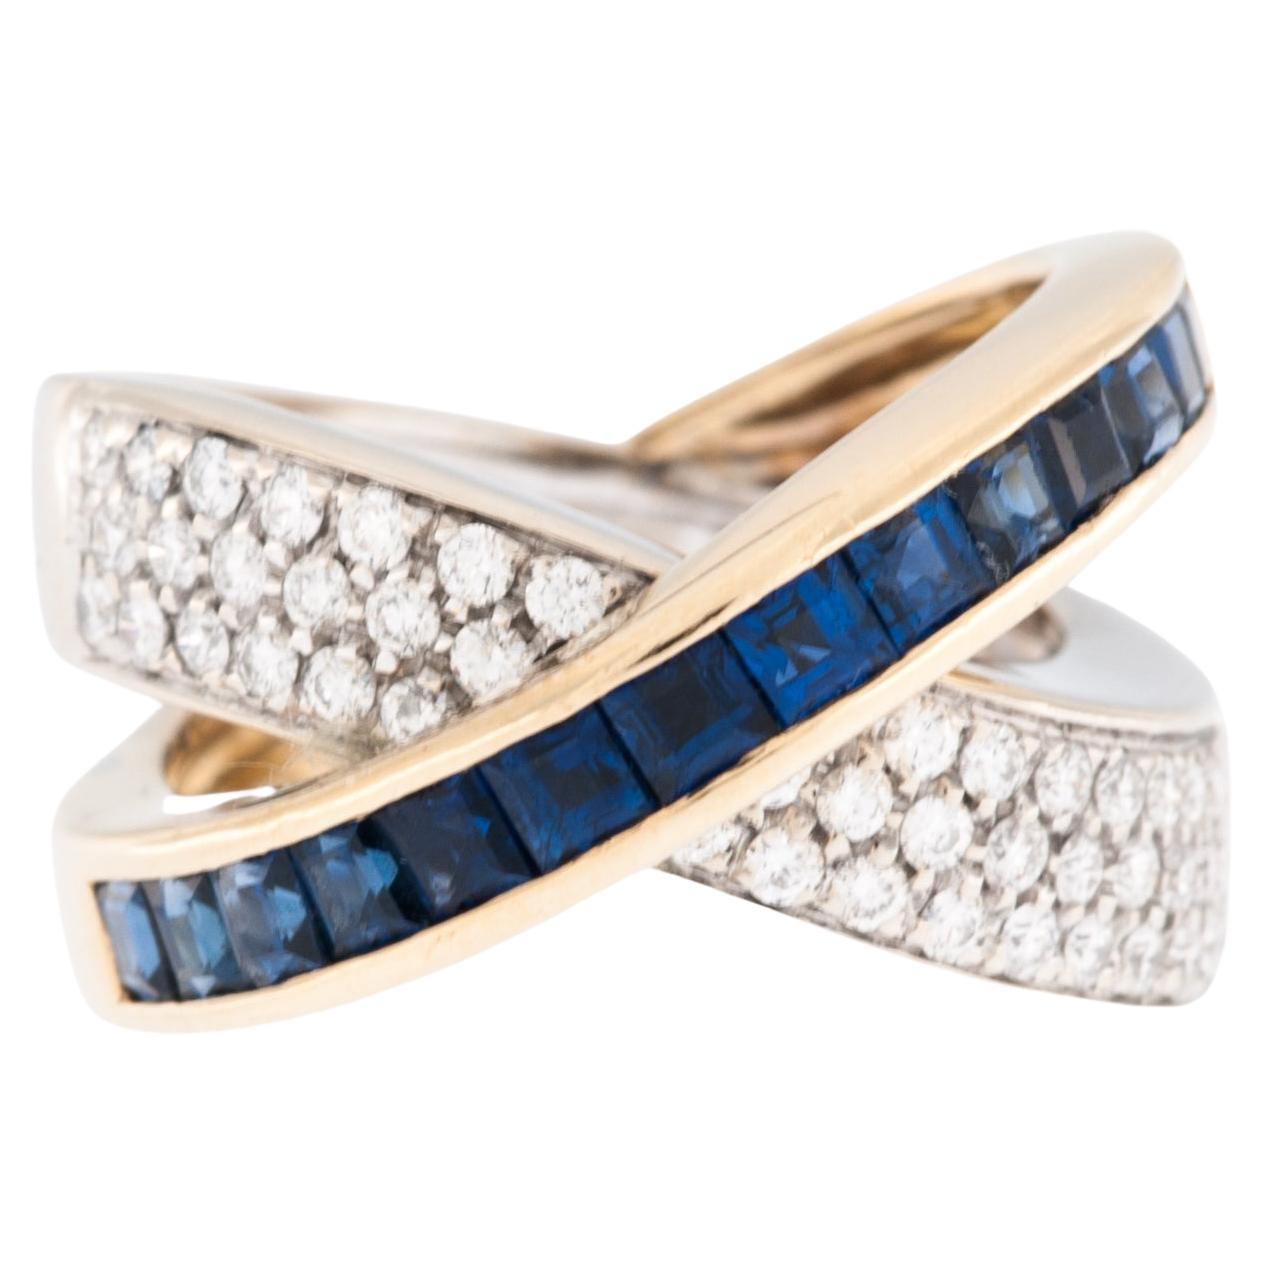 Goldring mit Diamanten und blauen Saphiren von Alfieri & St. John